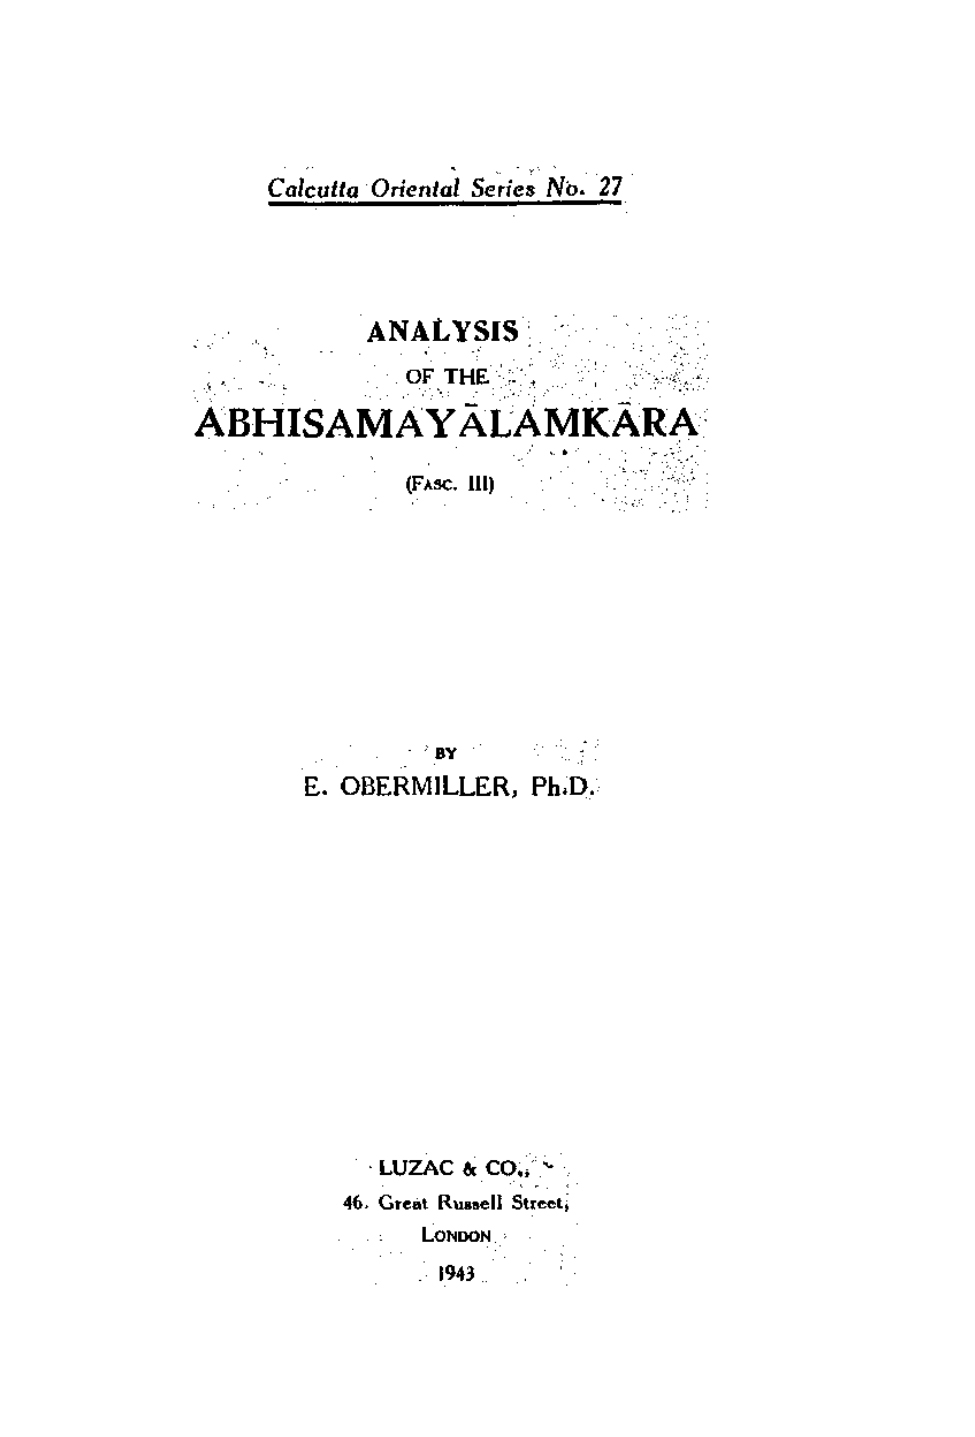 Analysis of the Abhisamayalamkara Fasc 3-front.jpg